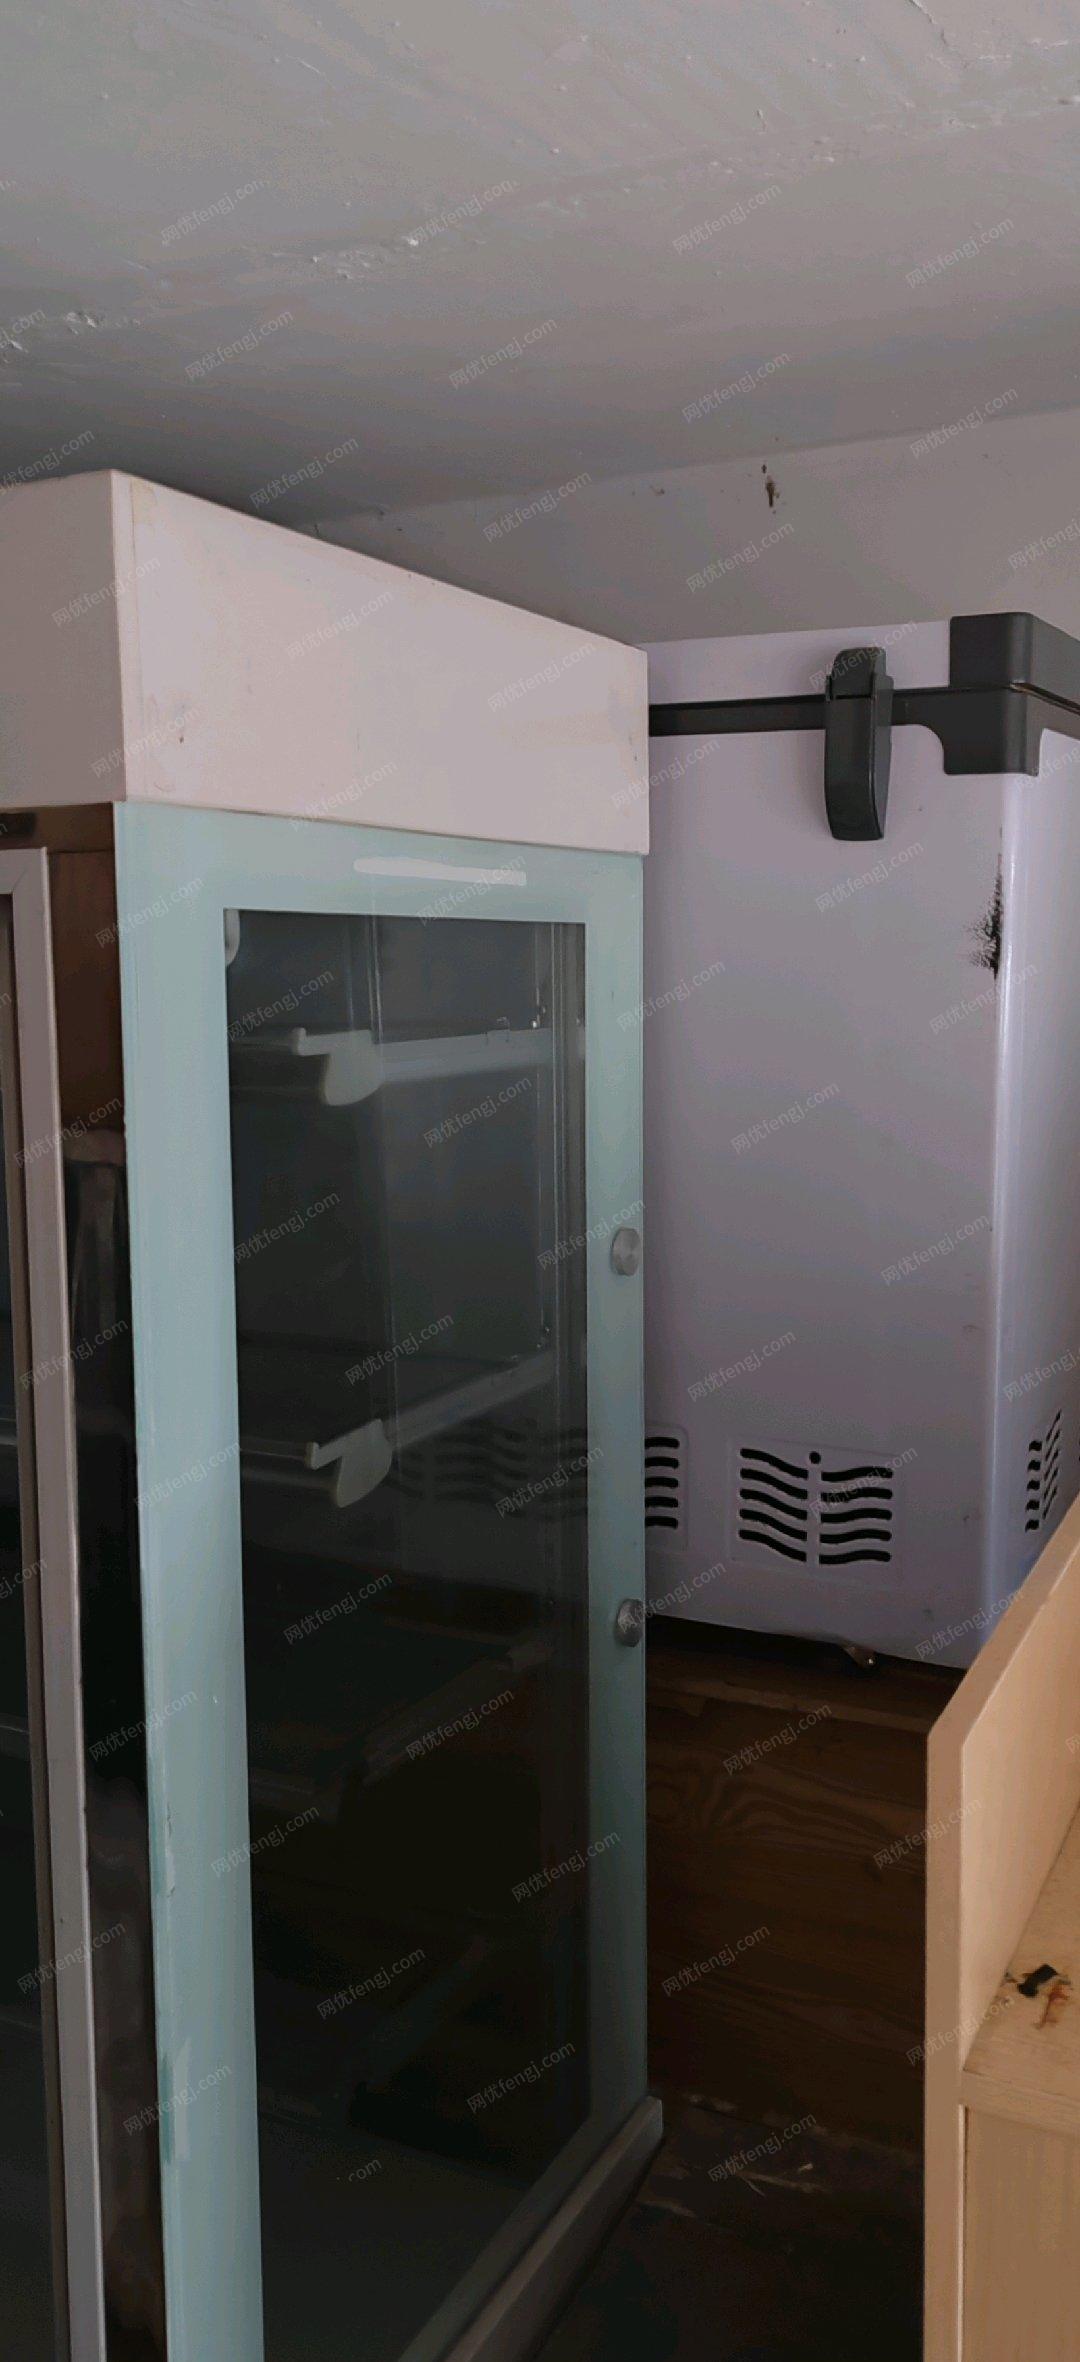 江西抚州9成冷藏柜冰箱面包设备处理